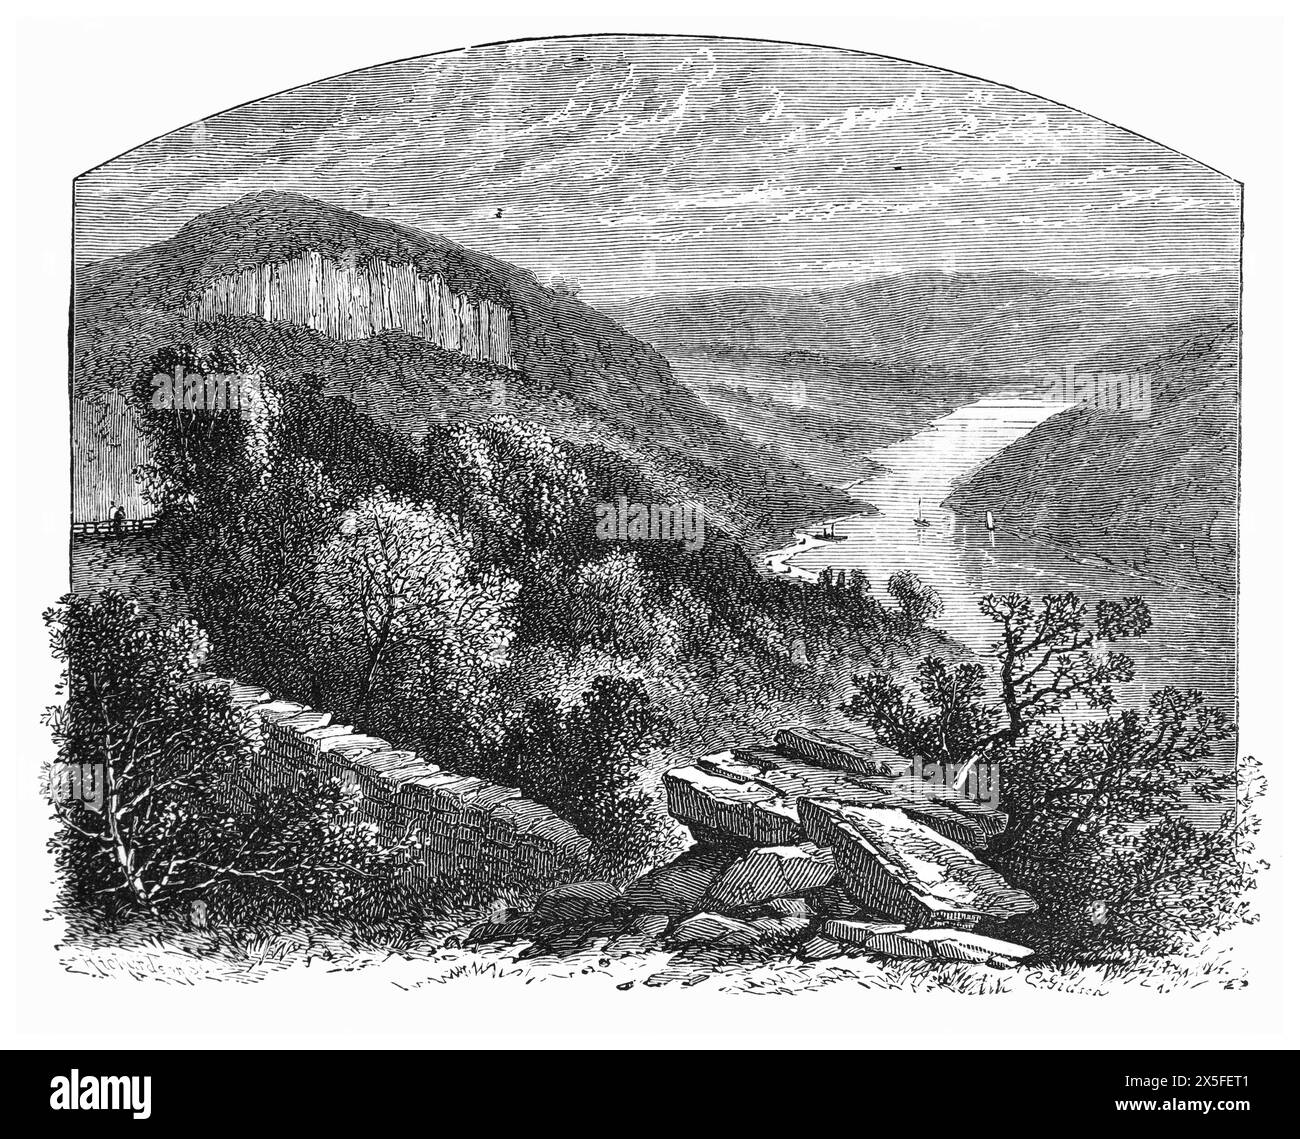 Wyndcliff oder Wynd Cliff, wie es im 19. Jahrhundert erschien. Der Wyndcliff ist eine steile Kalksteinklippe, die sich über dem River Wye in Monmouthshire erhebt. Schwarz-weiß-Illustration aus unserem eigenen Land Band III, veröffentlicht von Cassell, Petter, Galpin & Co. Im späten 19. Jahrhundert. Stockfoto